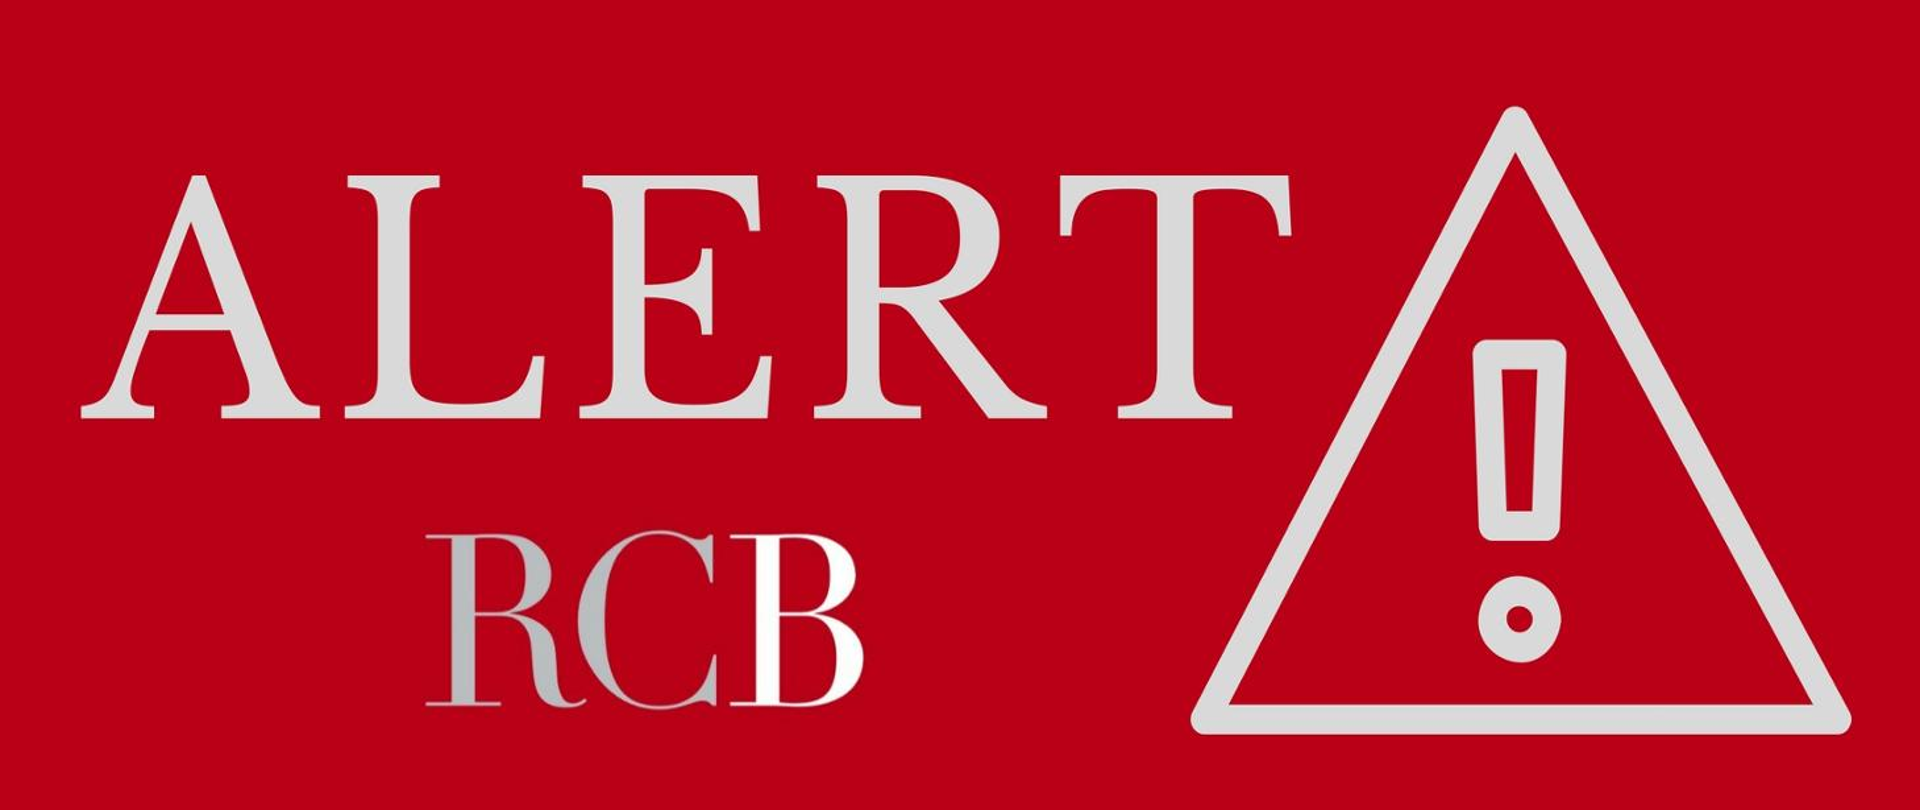 plakat w formie prostokąta, czerwone tło, po lewej stronie napis: "alert rcb", po prawej stronie ikona o białym zarysie: trójkąt z wykrzyknikiem w środku.